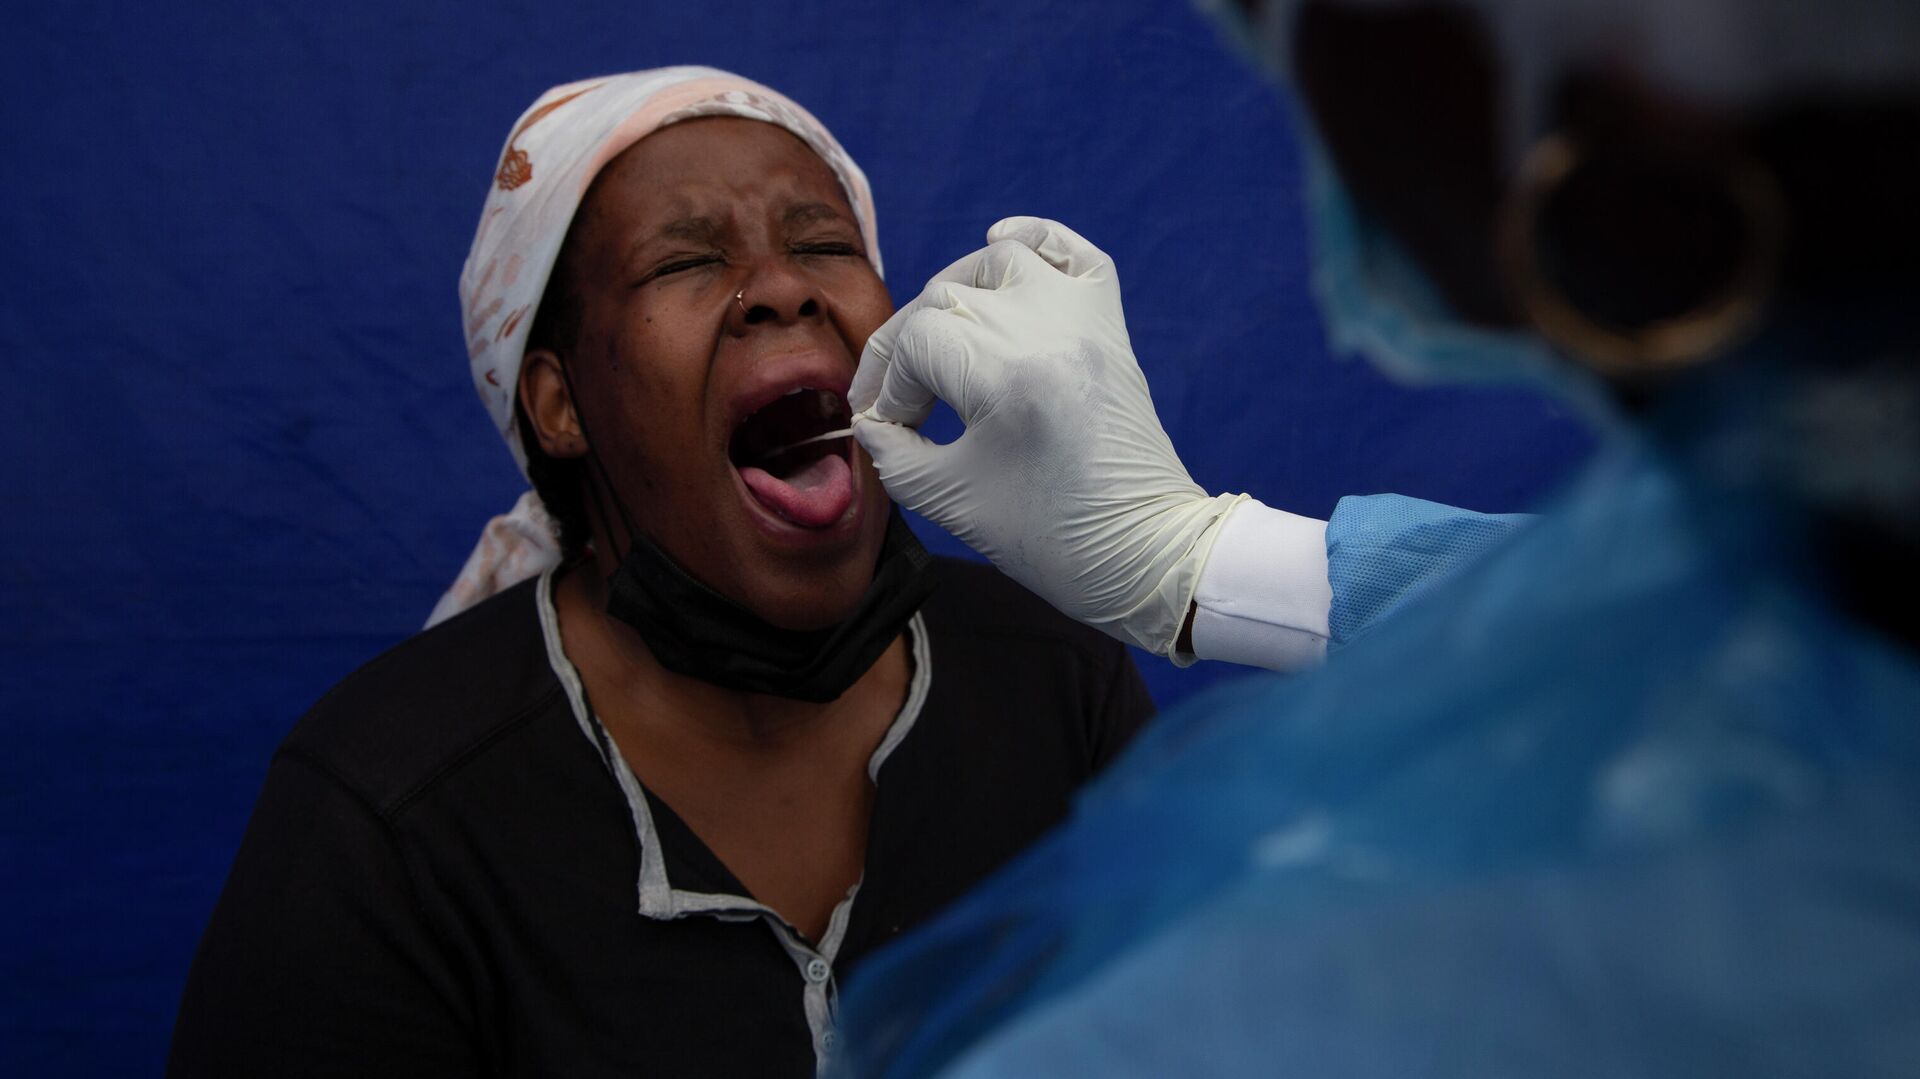 У пациента взят мазок из горла для проверки на COVID-19 в Соуэто, Южная Африка - РИА Новости, 1920, 08.12.2021